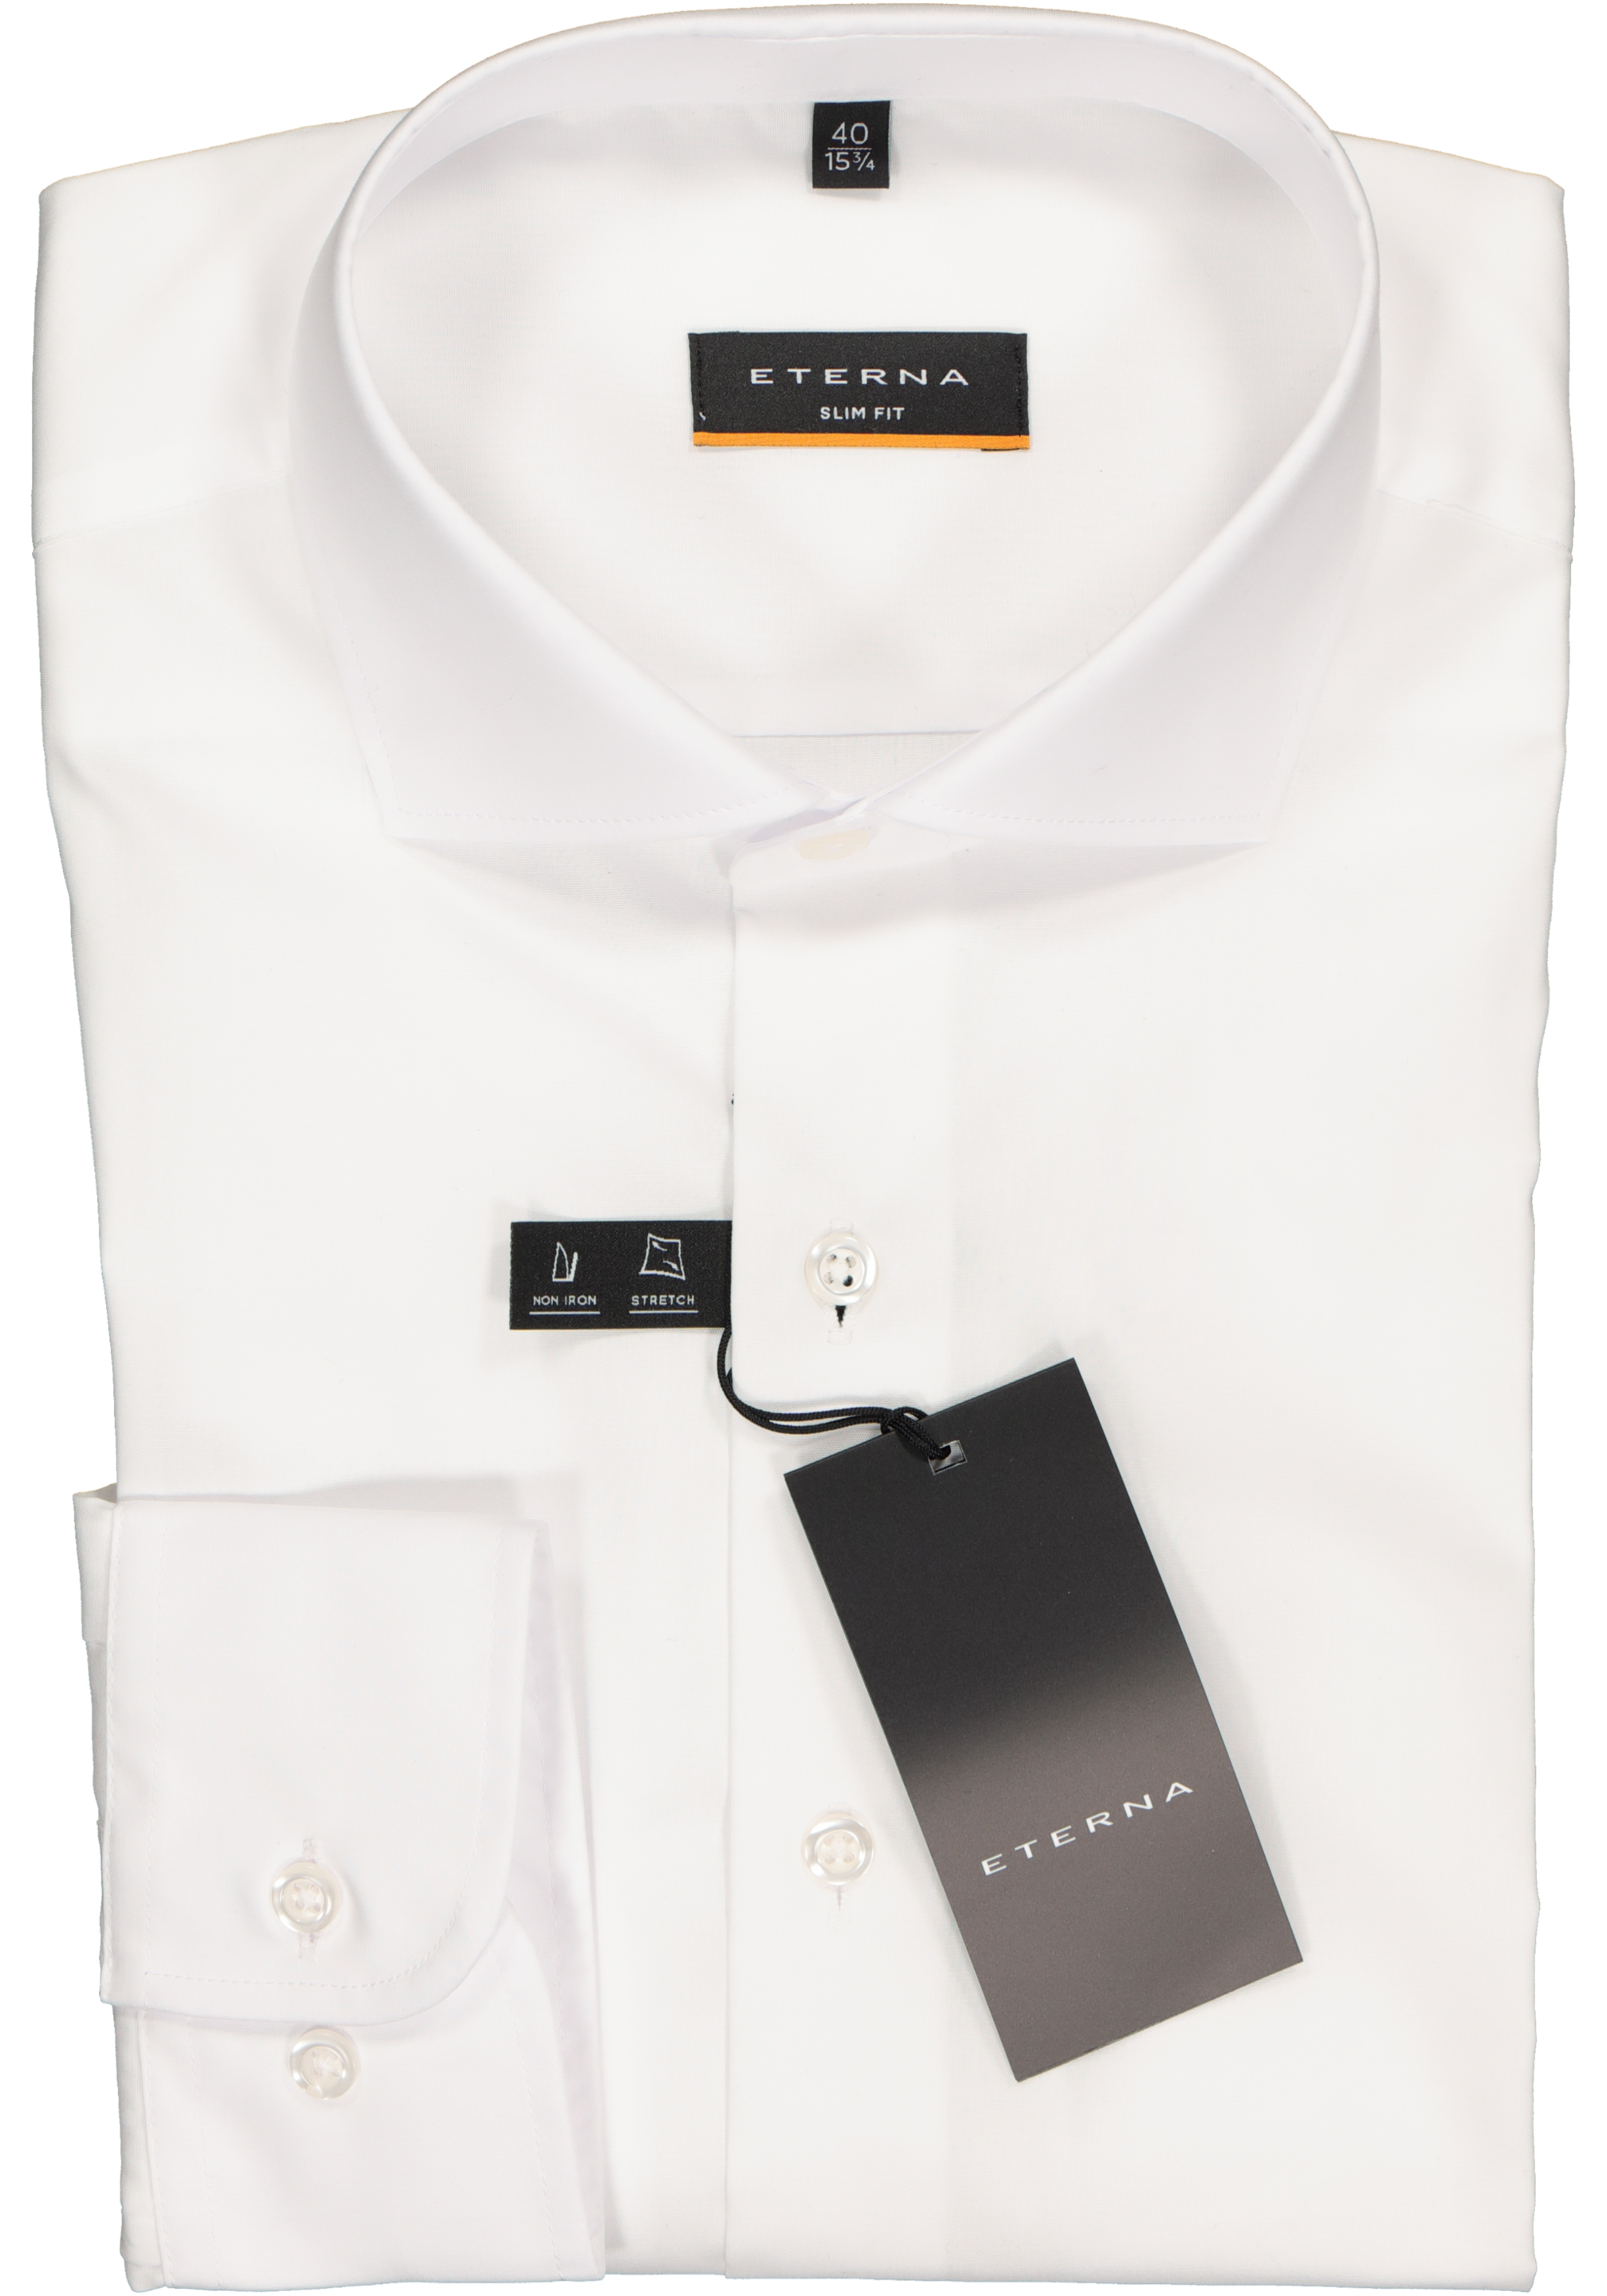 Mode Zakelijke overhemden Shirts met lange mouwen Primark Shirt met lange mouwen wit casual uitstraling 